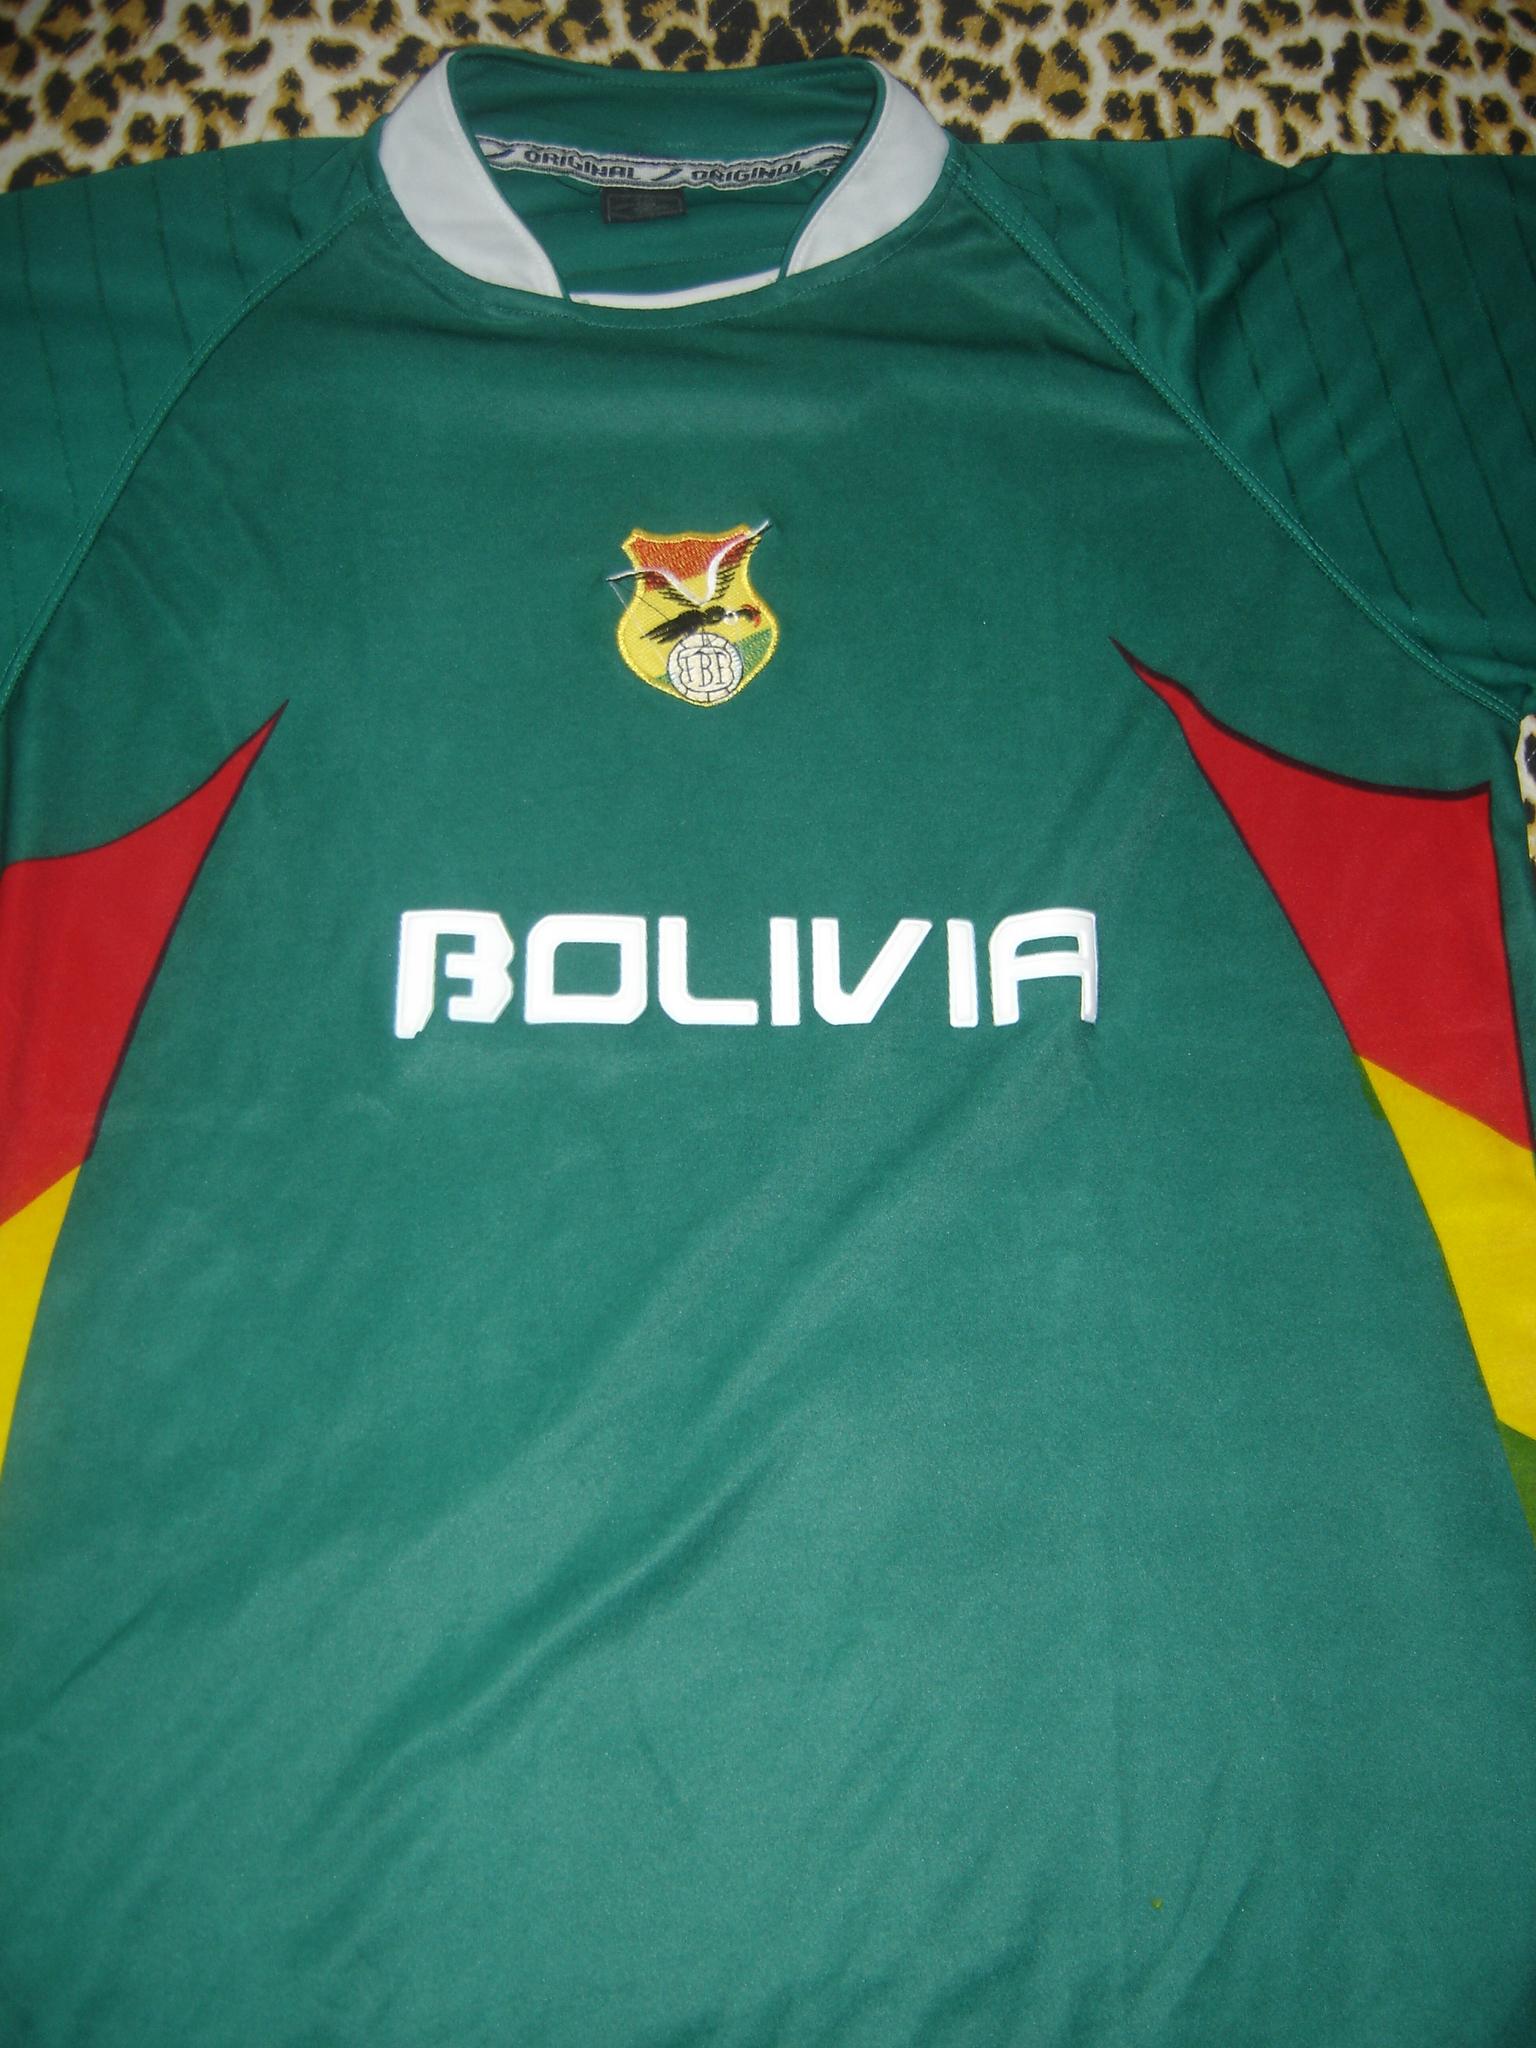 Club Aurora – Equipe de futebol da Bolívia